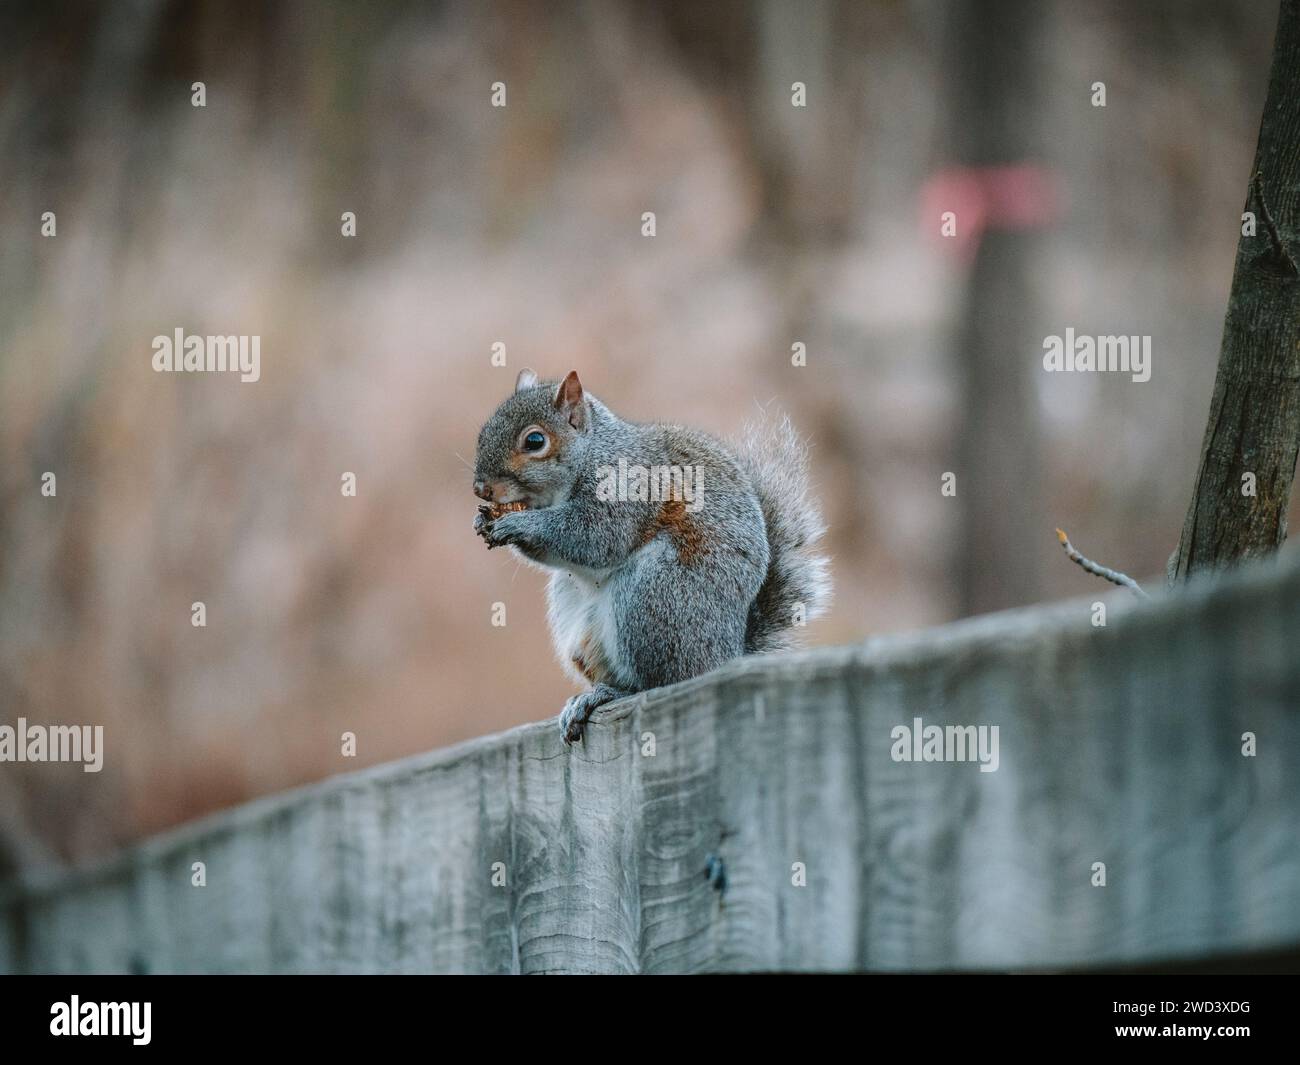 Uno scoiattolo che si gusta uno spuntino su un palo di recinzione in legno. Foto Stock